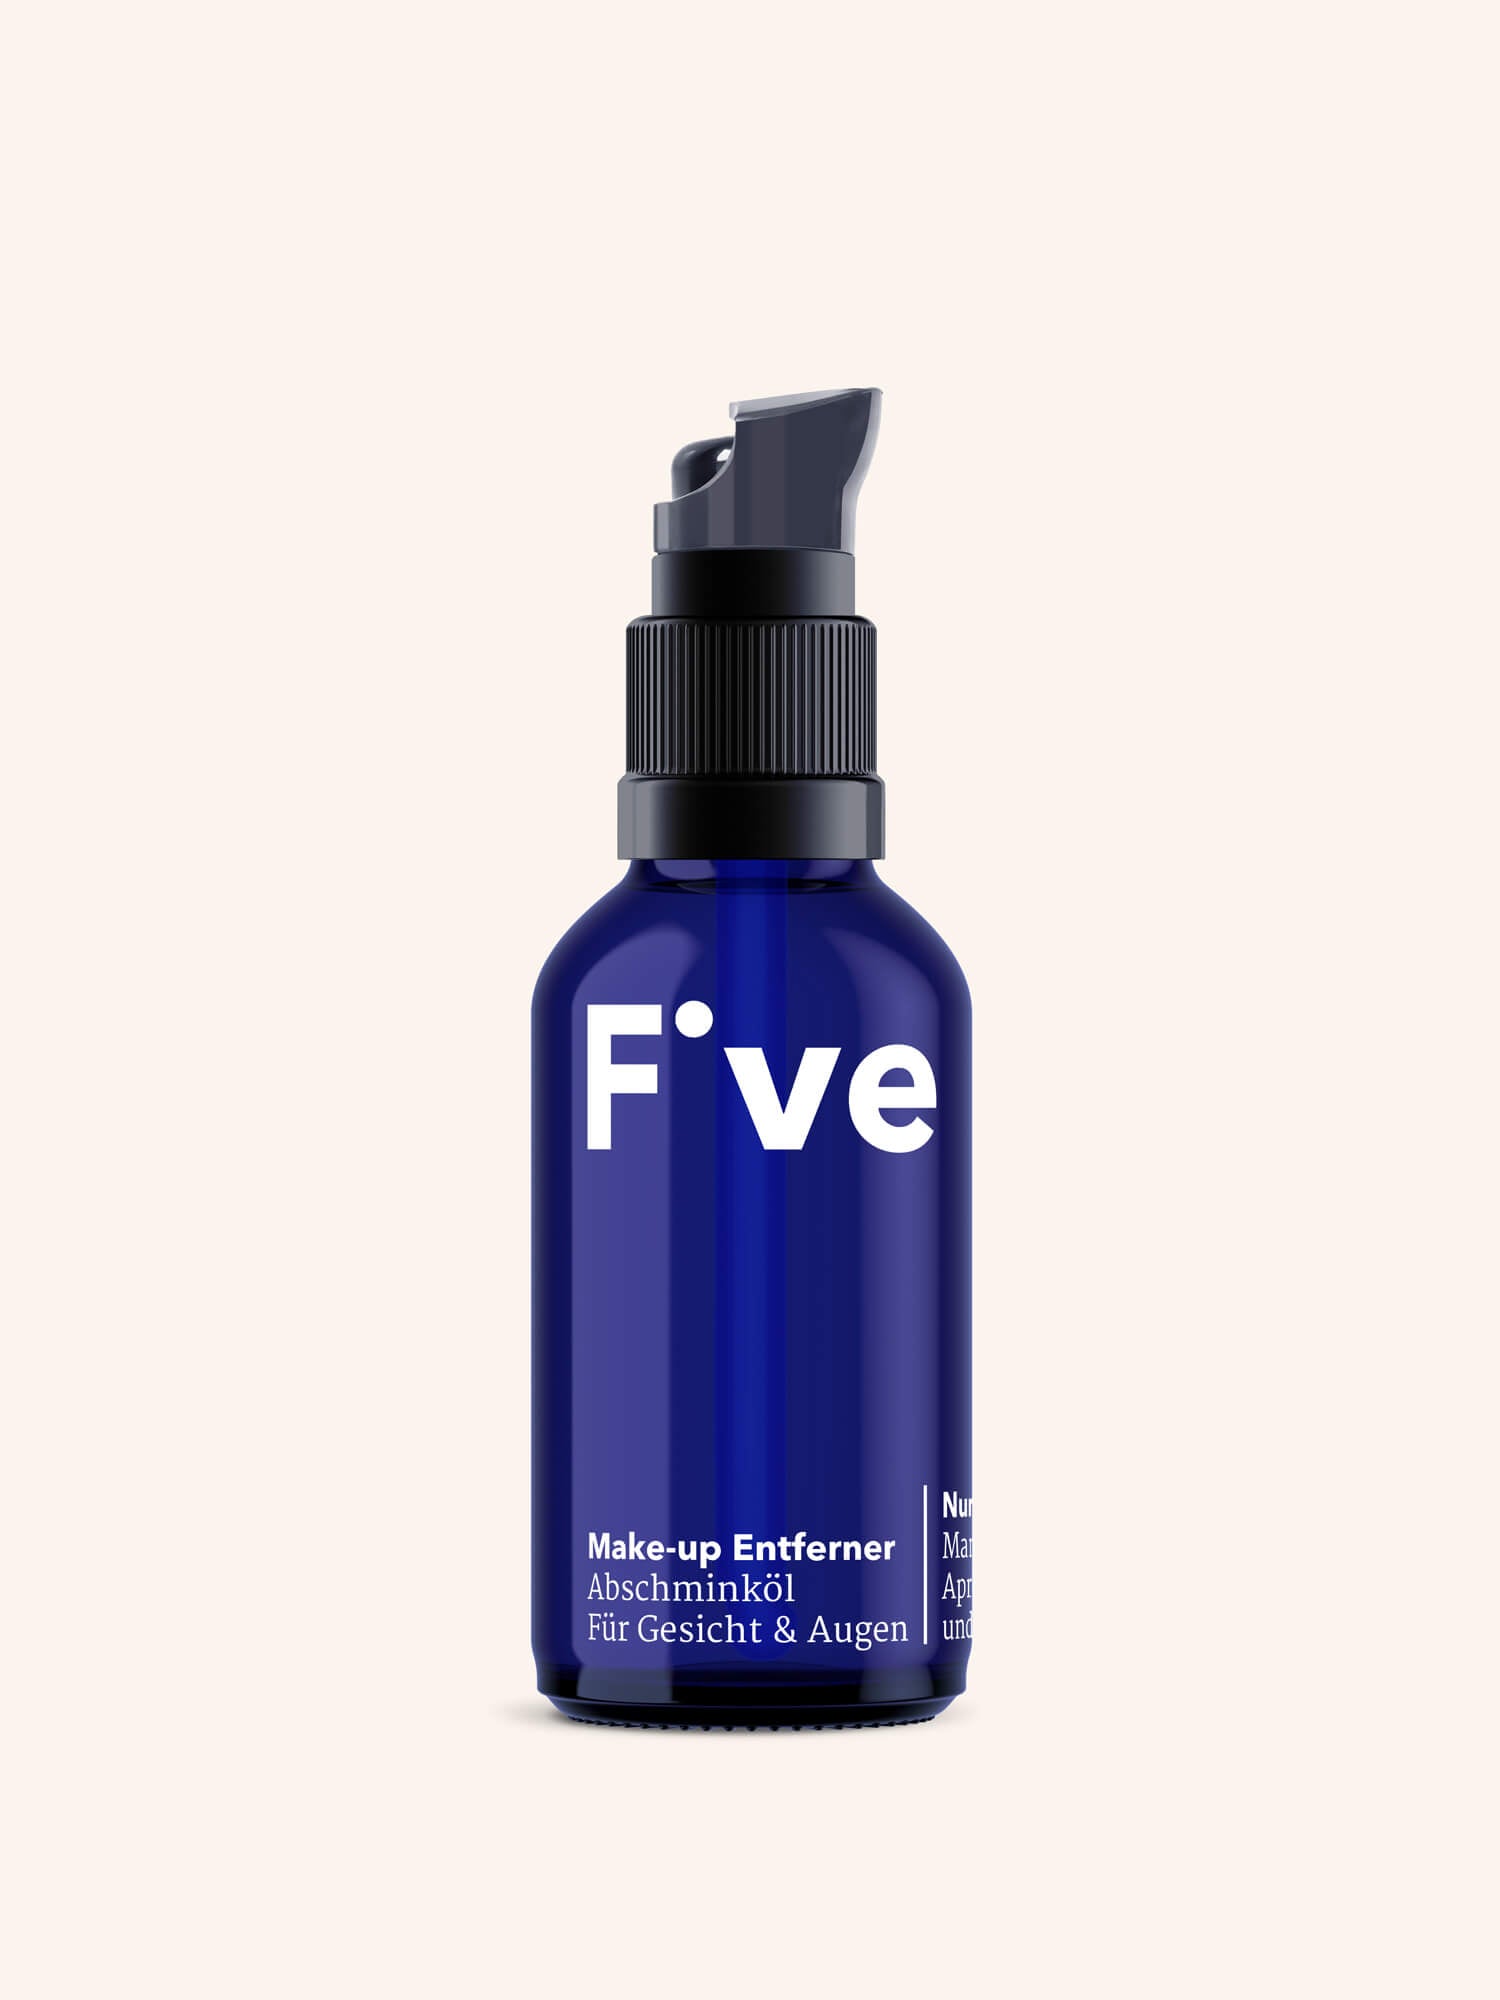 FIVE Make-up Entferner | Five Skincare